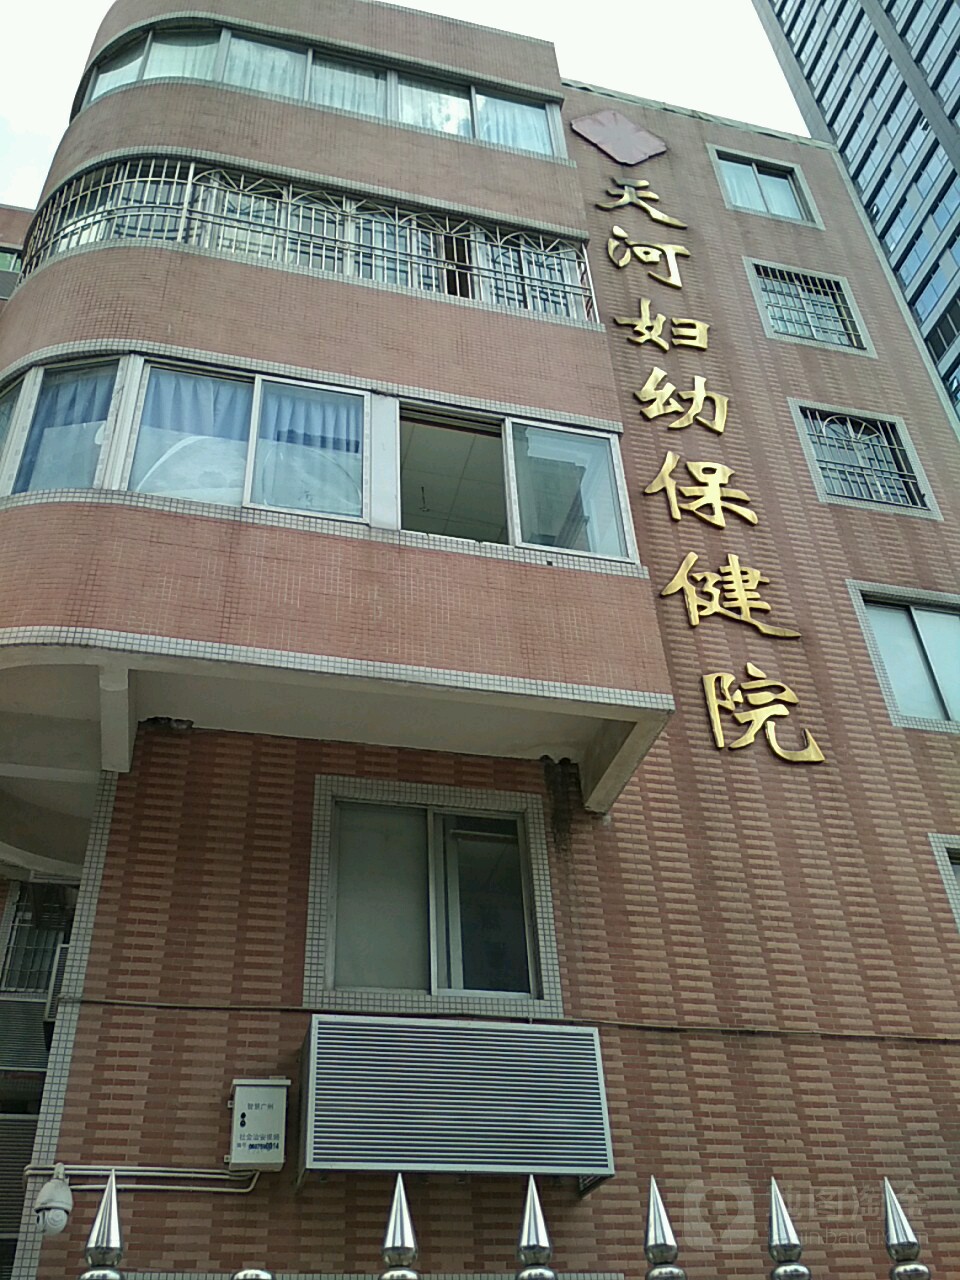 广州市天河区妇幼保健院